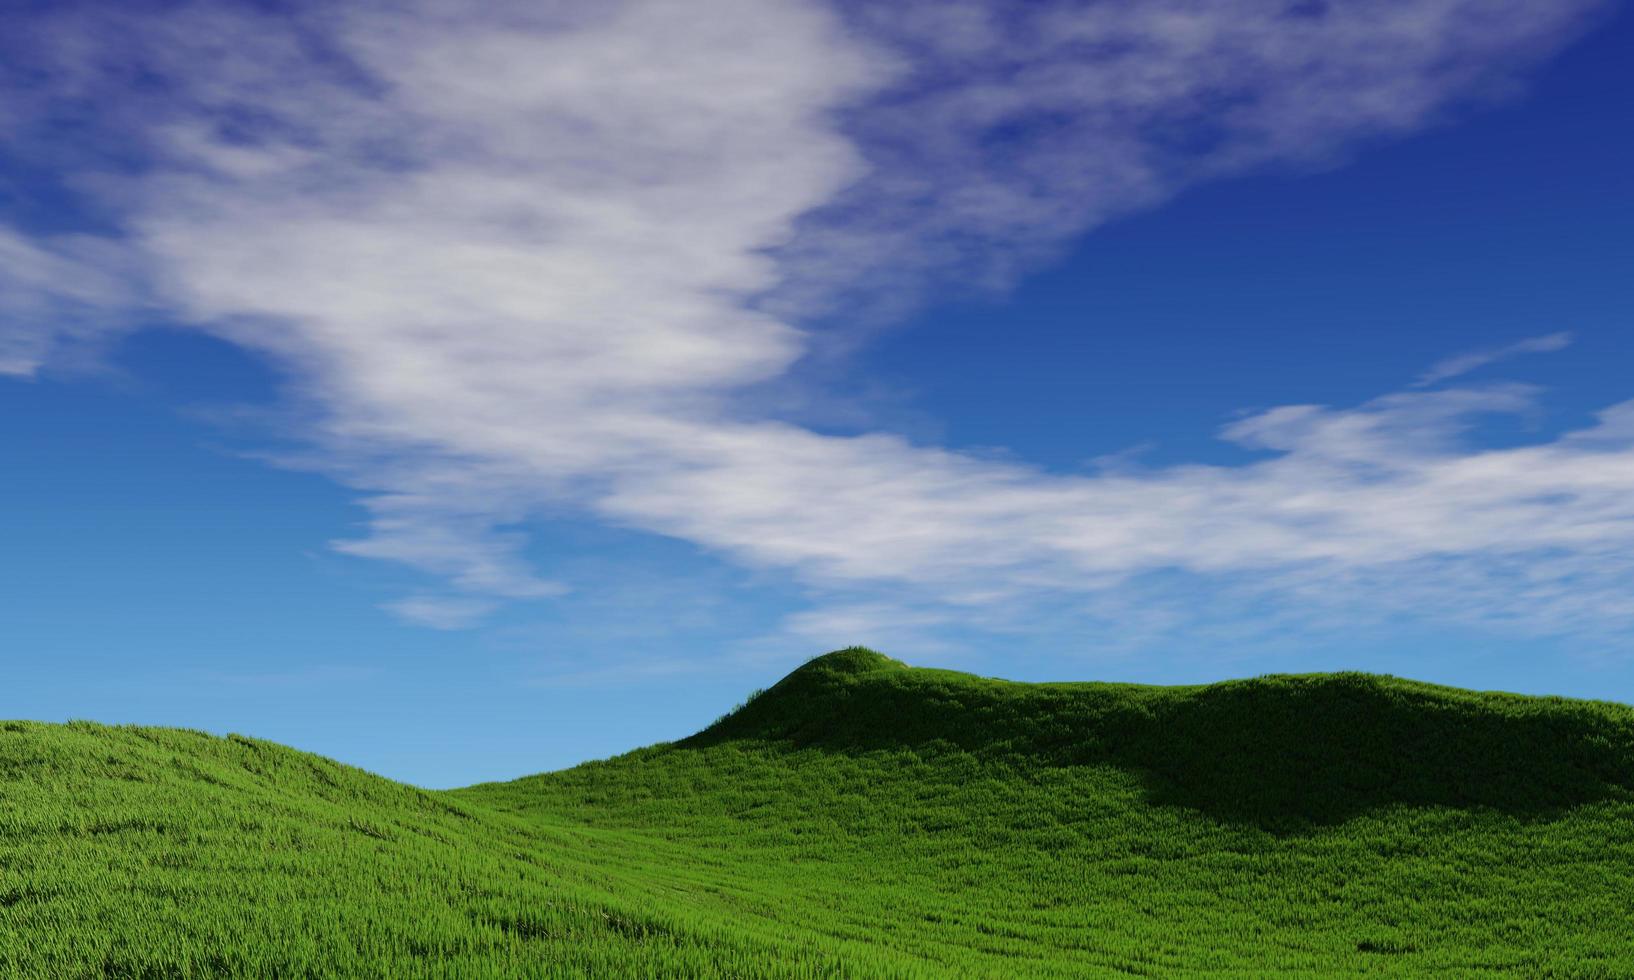 cielo azul y hermosa nube con árbol de pradera. fondo de paisaje llano para el cartel de verano. la mejor vista para vacaciones. imagen de campo de hierba verde y cielo azul con nubes blancas foto